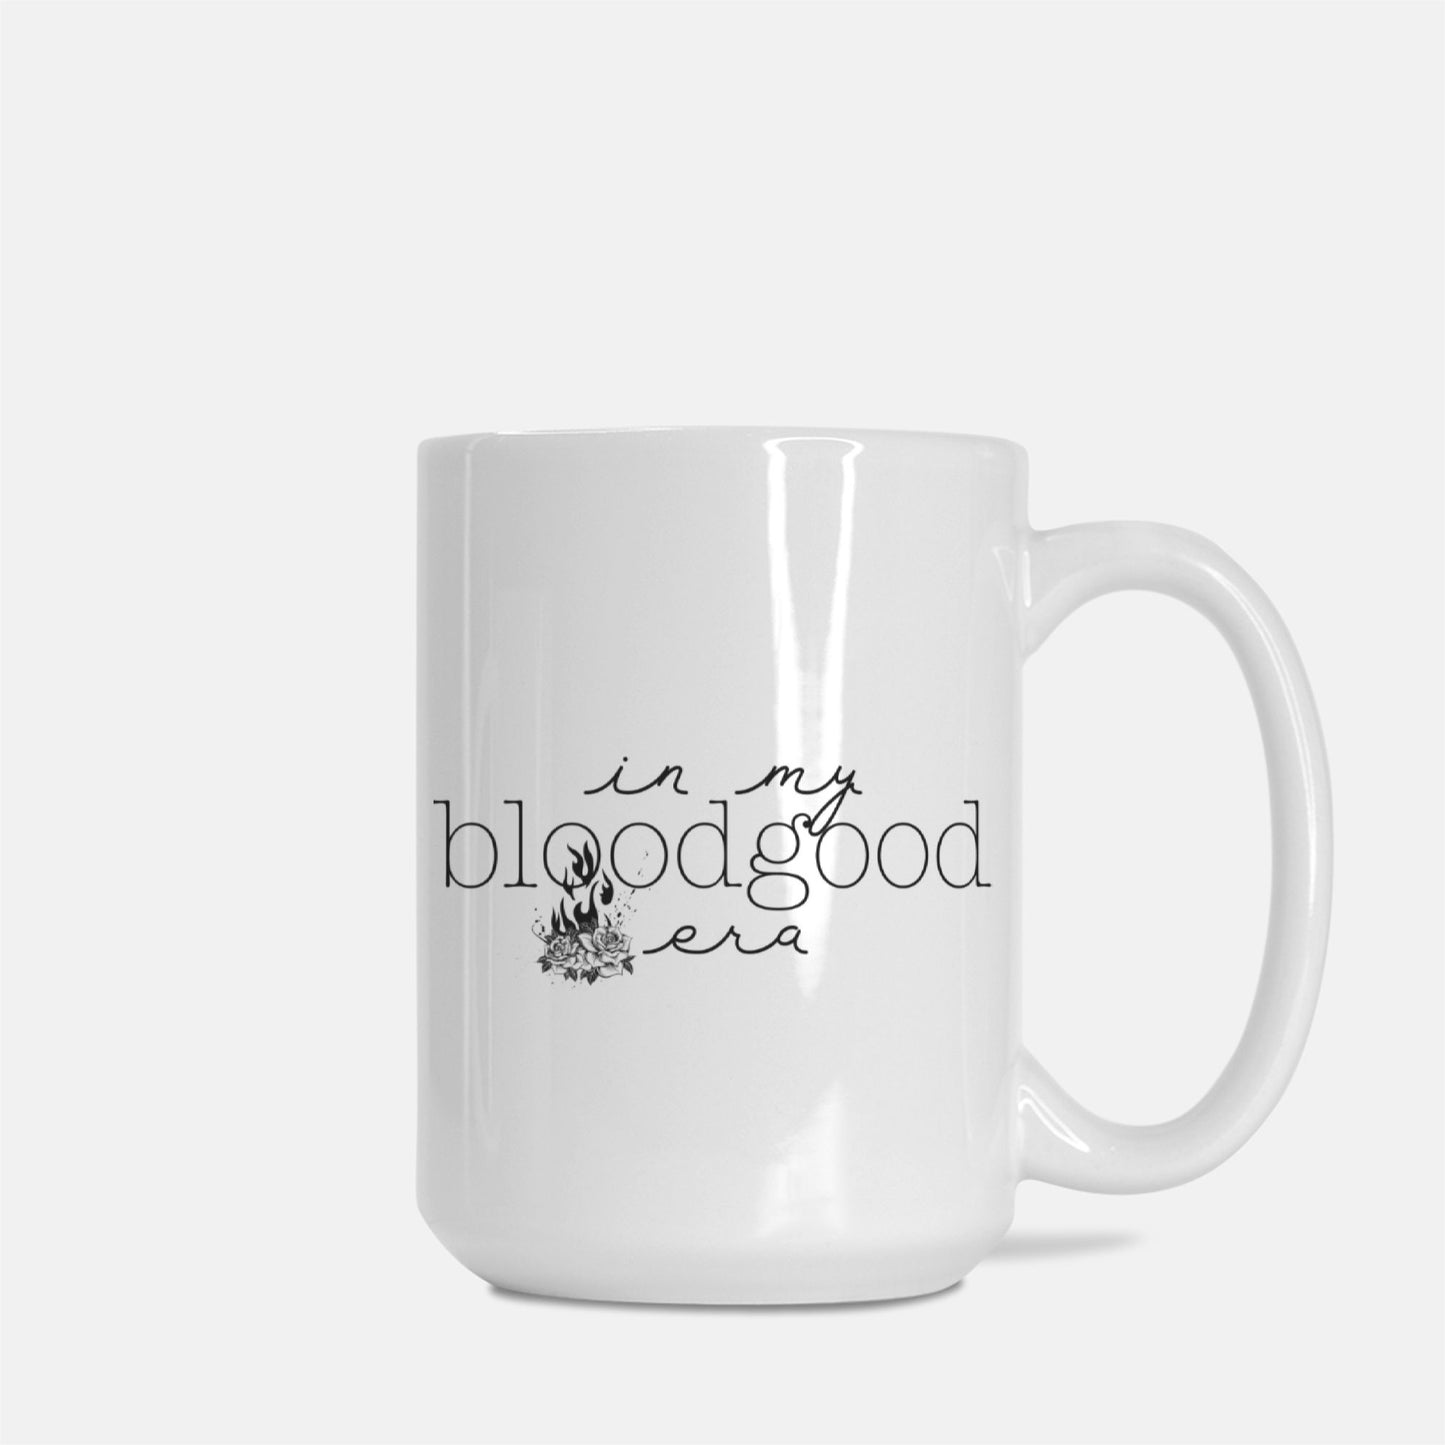 Bloodgood Era - Bookish Eras - Drinkware